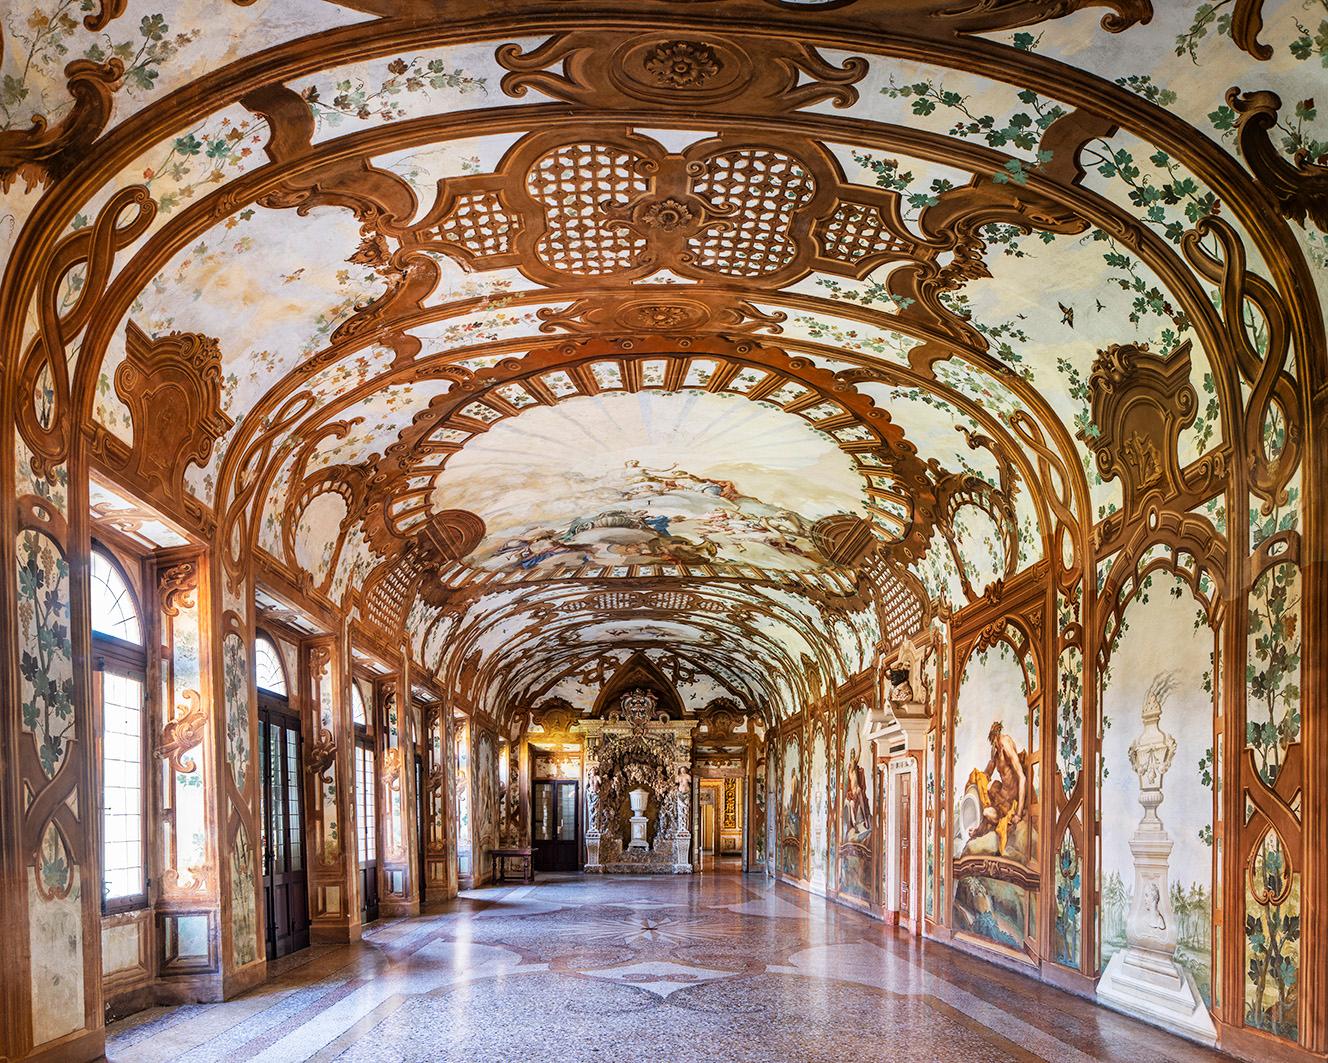 Reinhard Görner Still-Life Photograph – Sala dei Fiumi I (Halle der Flüsse), Herzogspalast von Mantua, Italien